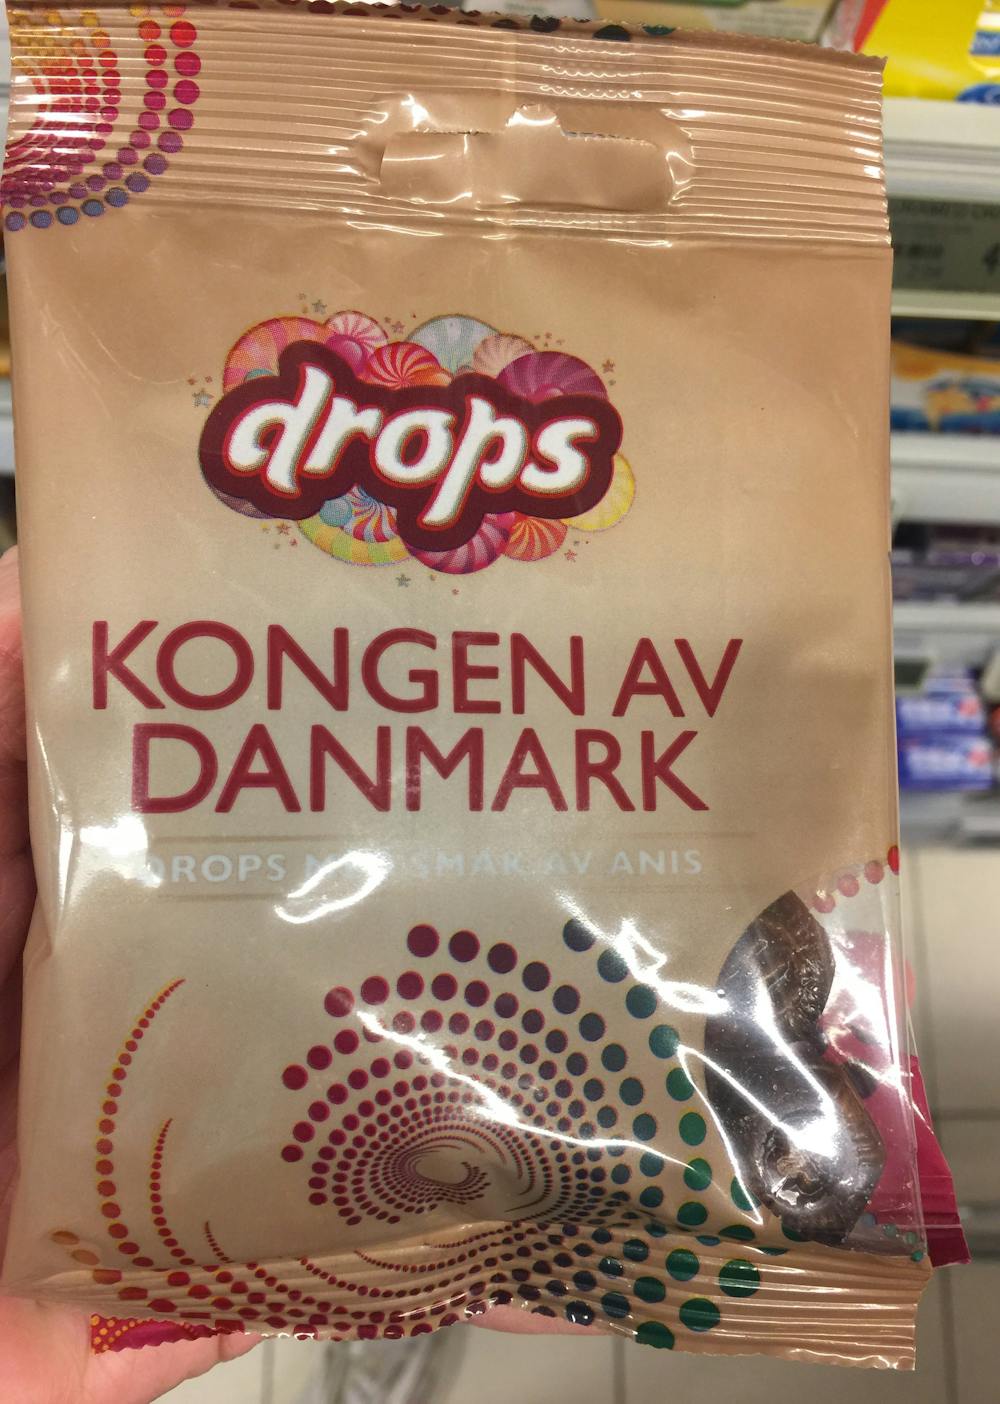 Kongen av Danmark, Drops